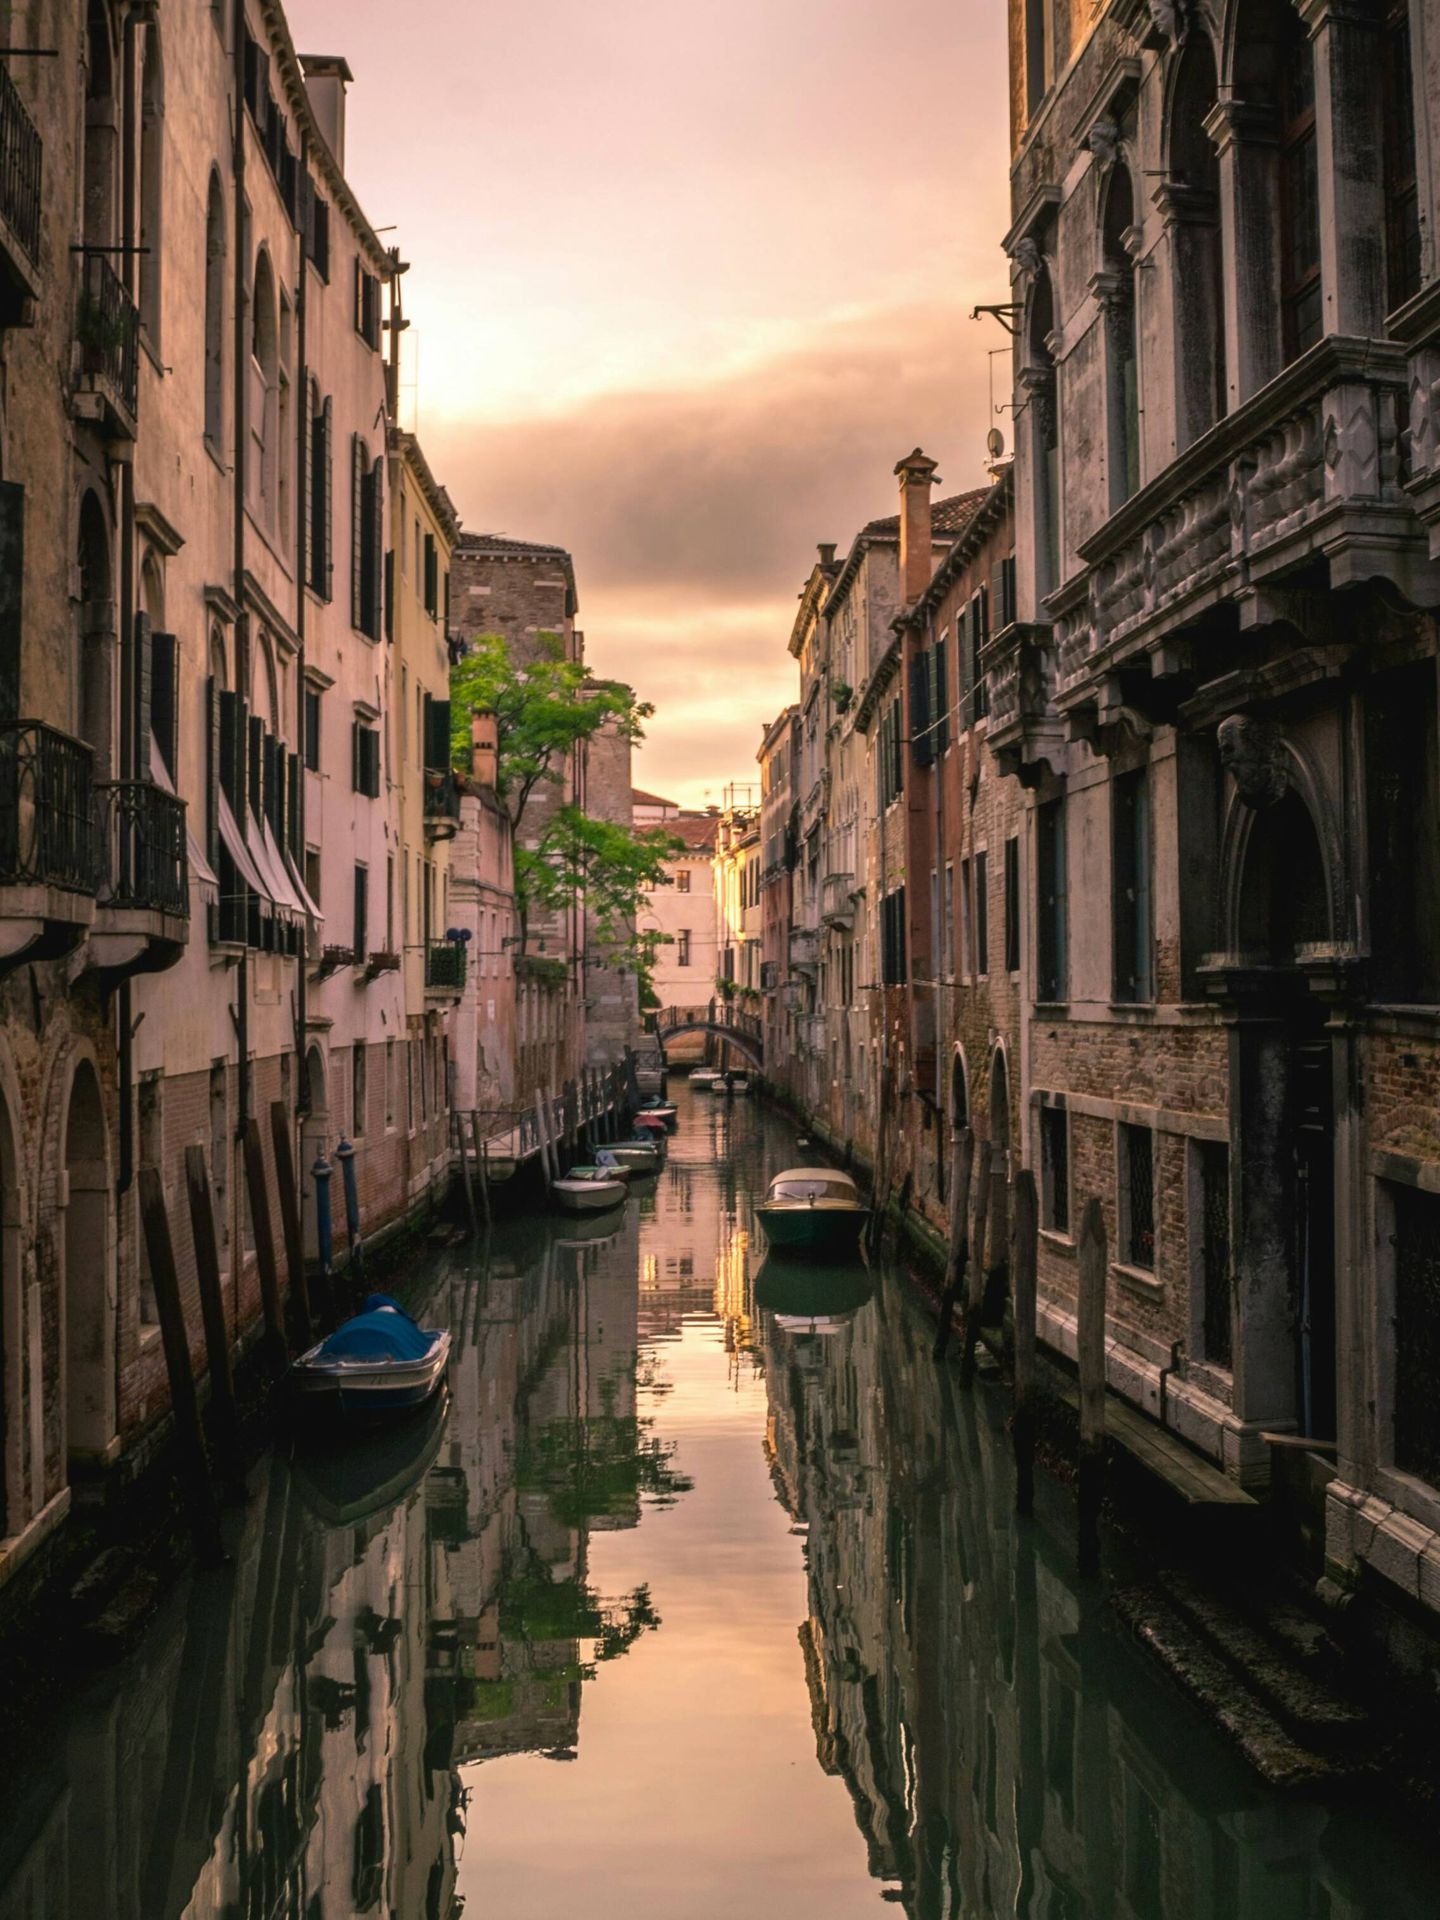 Venecia siempre será única. (Cortesía)